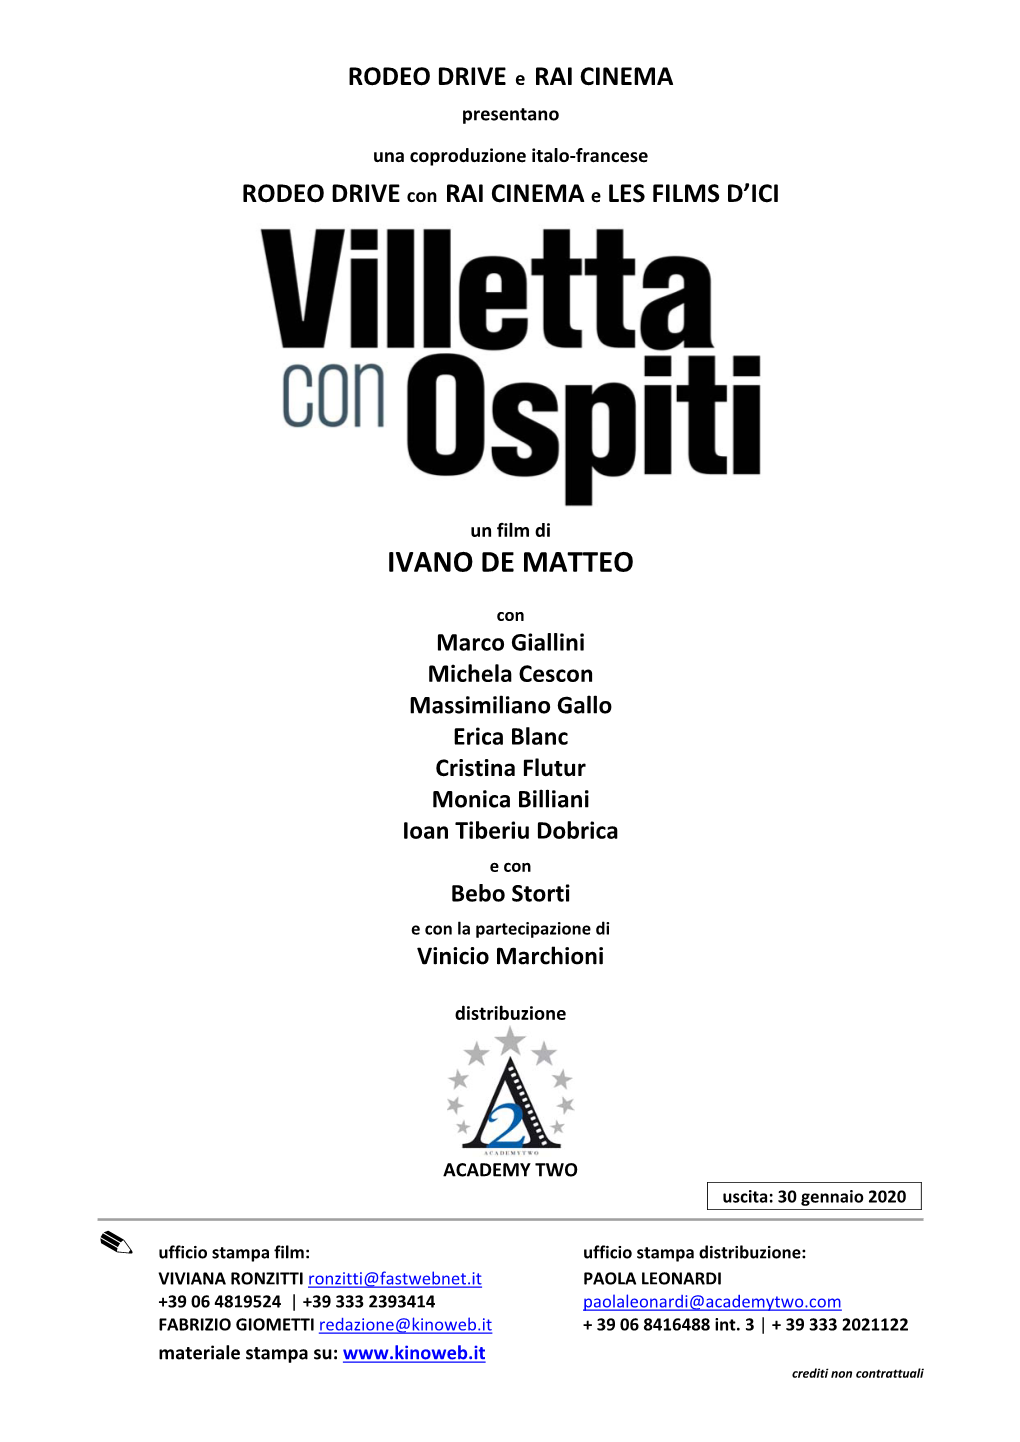 VILLETTA CON OSPITI Pressbook Uscita 30 Gennaio 2020